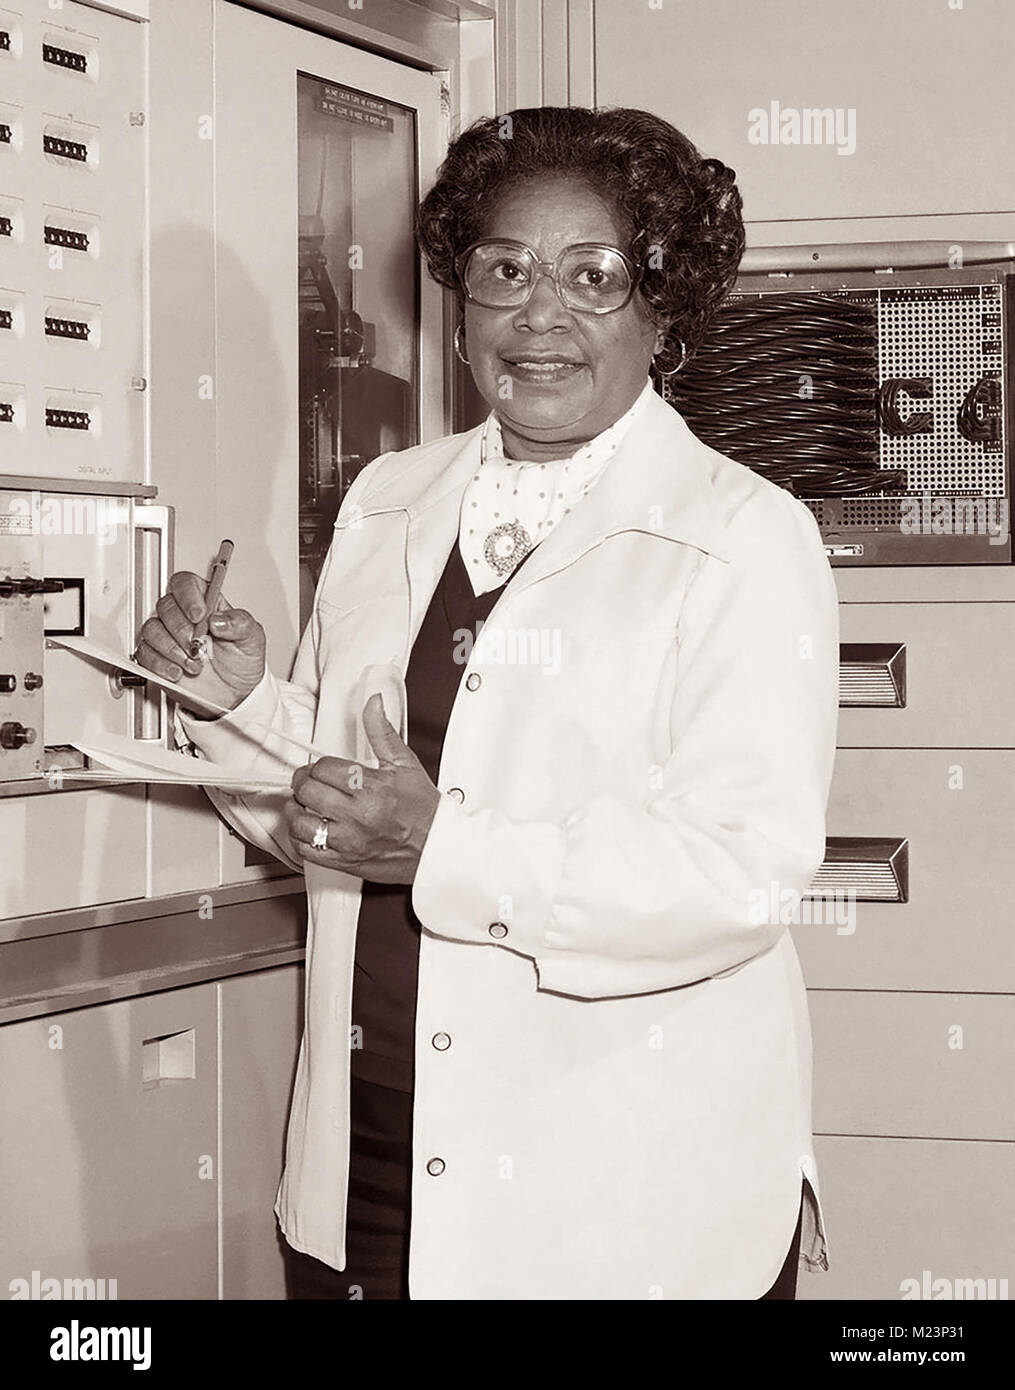 Maria Winston Jackson (1921 - 2005) war ein Afrikanischer Amerikanischer Mathematiker und Ingenieur für Luft- und Raumfahrt an der Nationalen Beratenden Ausschuss für die Luft- und Raumfahrt (NACA), die 1958 das Nationale Luft- und Raumfahrtbehörde (NASA). Maria arbeitete in Langley Research Center, Hampton, Virginia, für die meisten ihrer Karriere, zunächst als "Computer" im westlichen Bereich Computing Division getrennt. Sie nahm advanced engineering Klassen und im Jahre 1958 wurde die NASA erste schwarze Ingenieurin. Jackson war in dem Film versteckte Zahlen sowie das Buch auf dem der Film basiert. Stockfoto